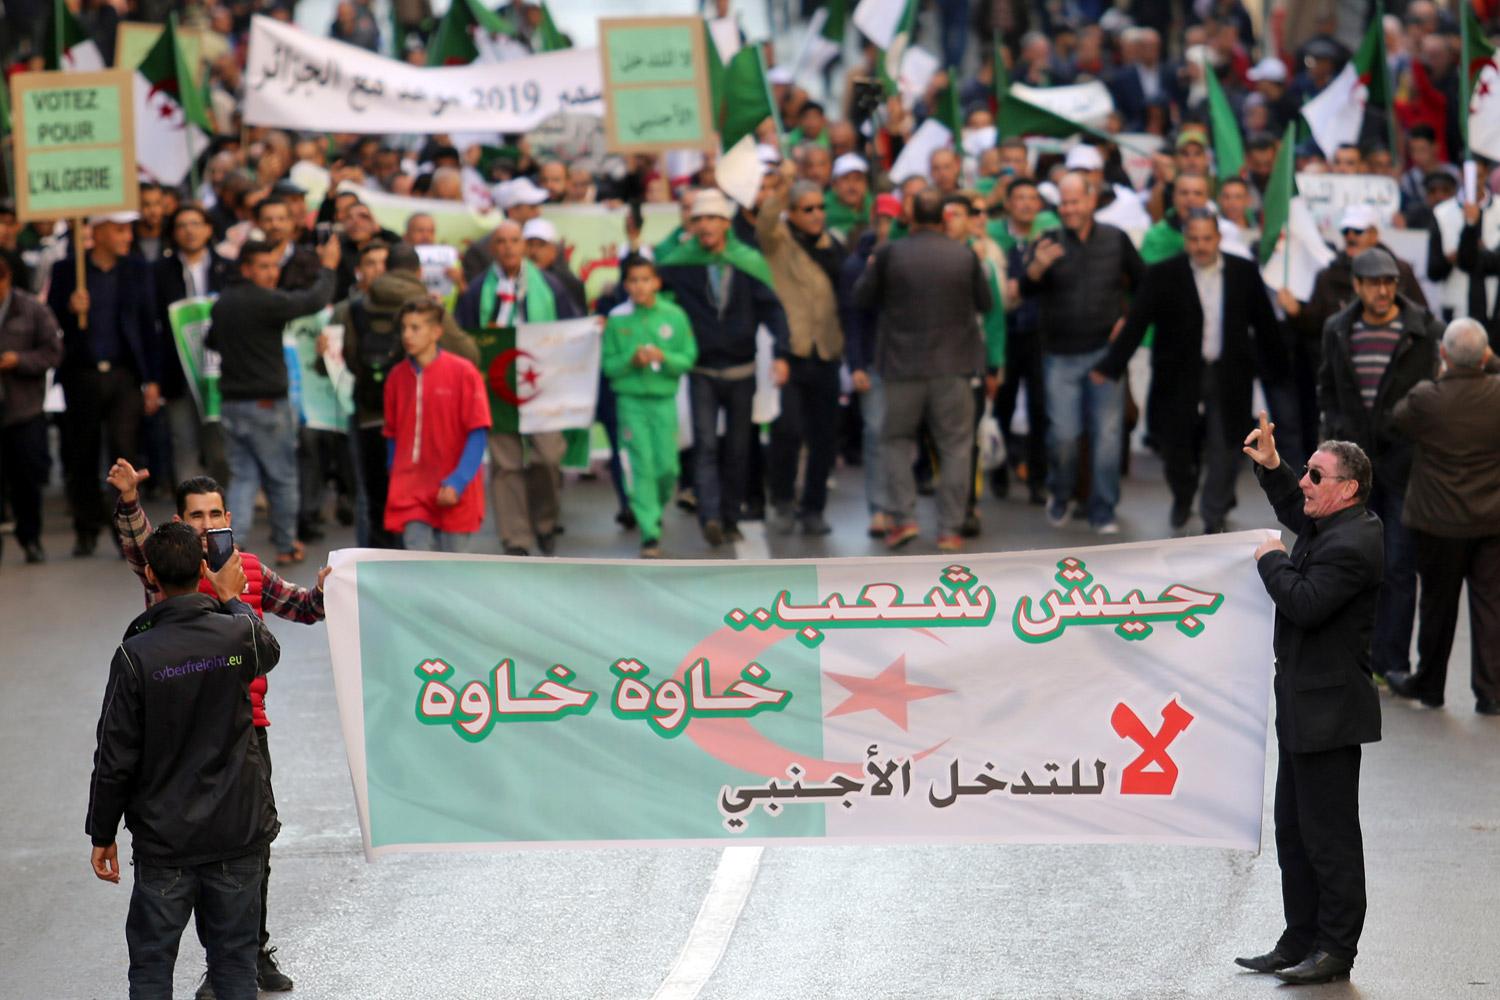 جزائريون موالون للسلطة اتهموا فرنسا بدعم الحراك